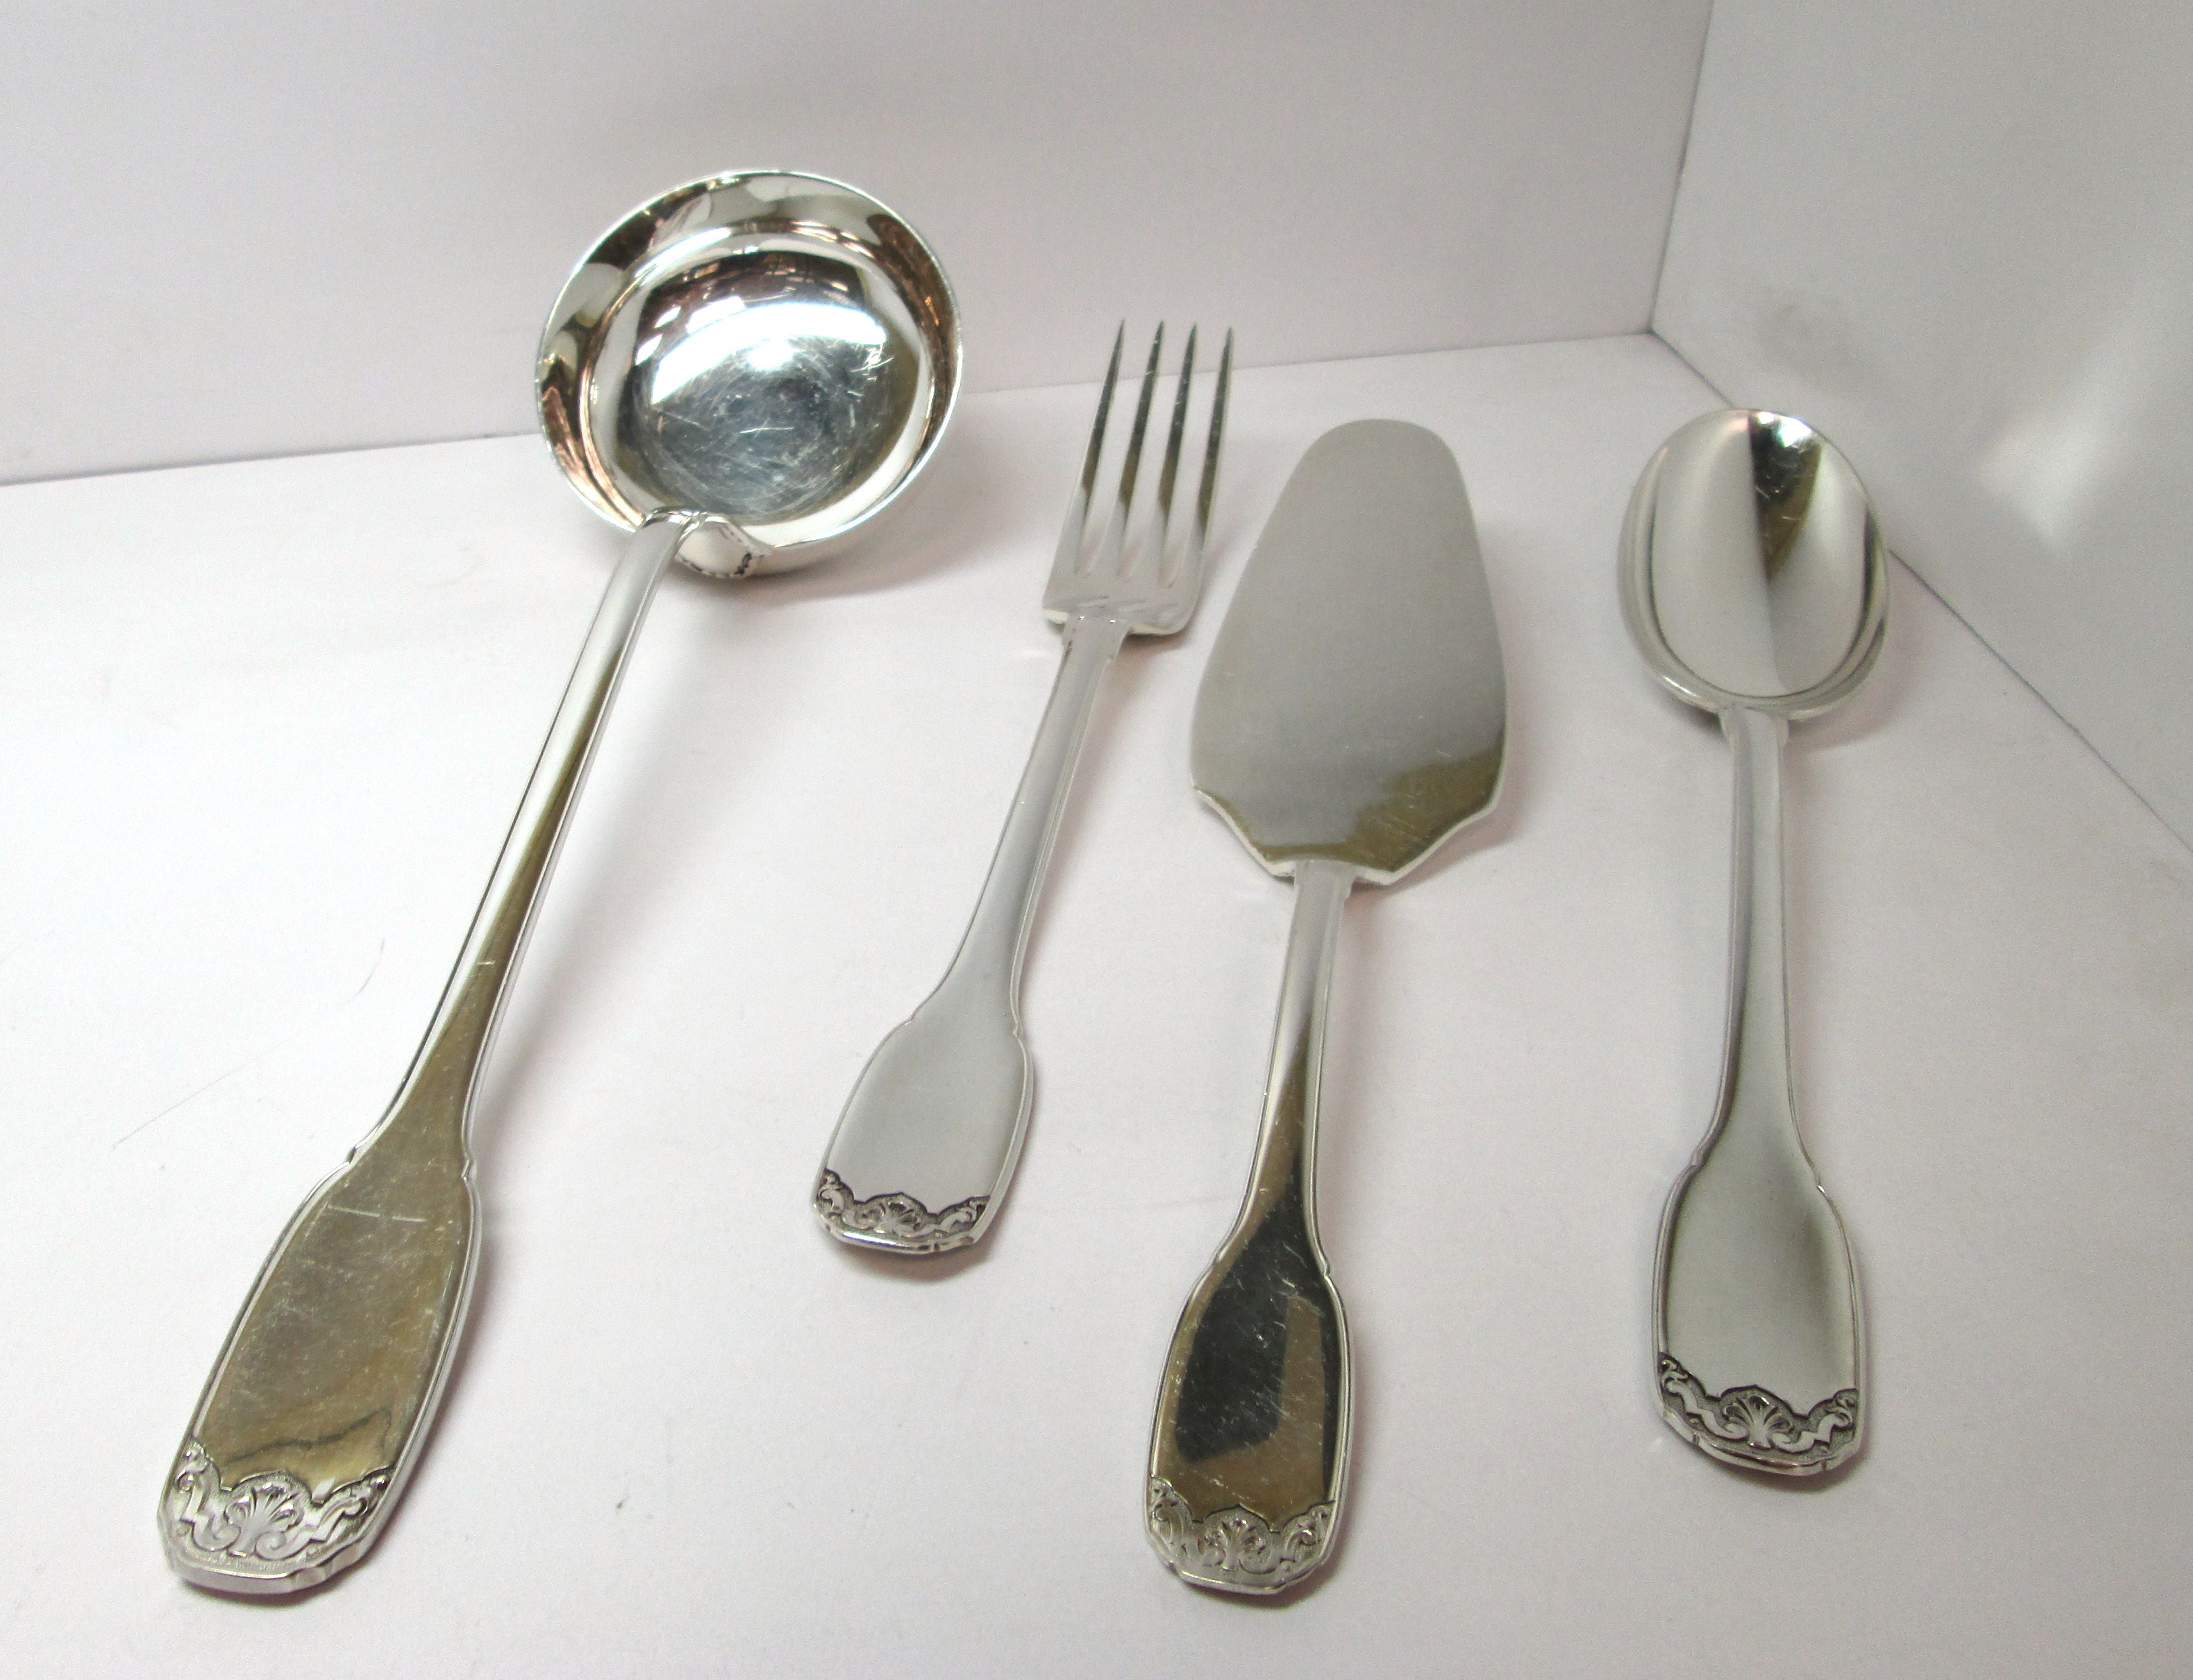 Servizio di posate Ricci in argento, d'epoca, stile francese, corredato di panno, usato. 